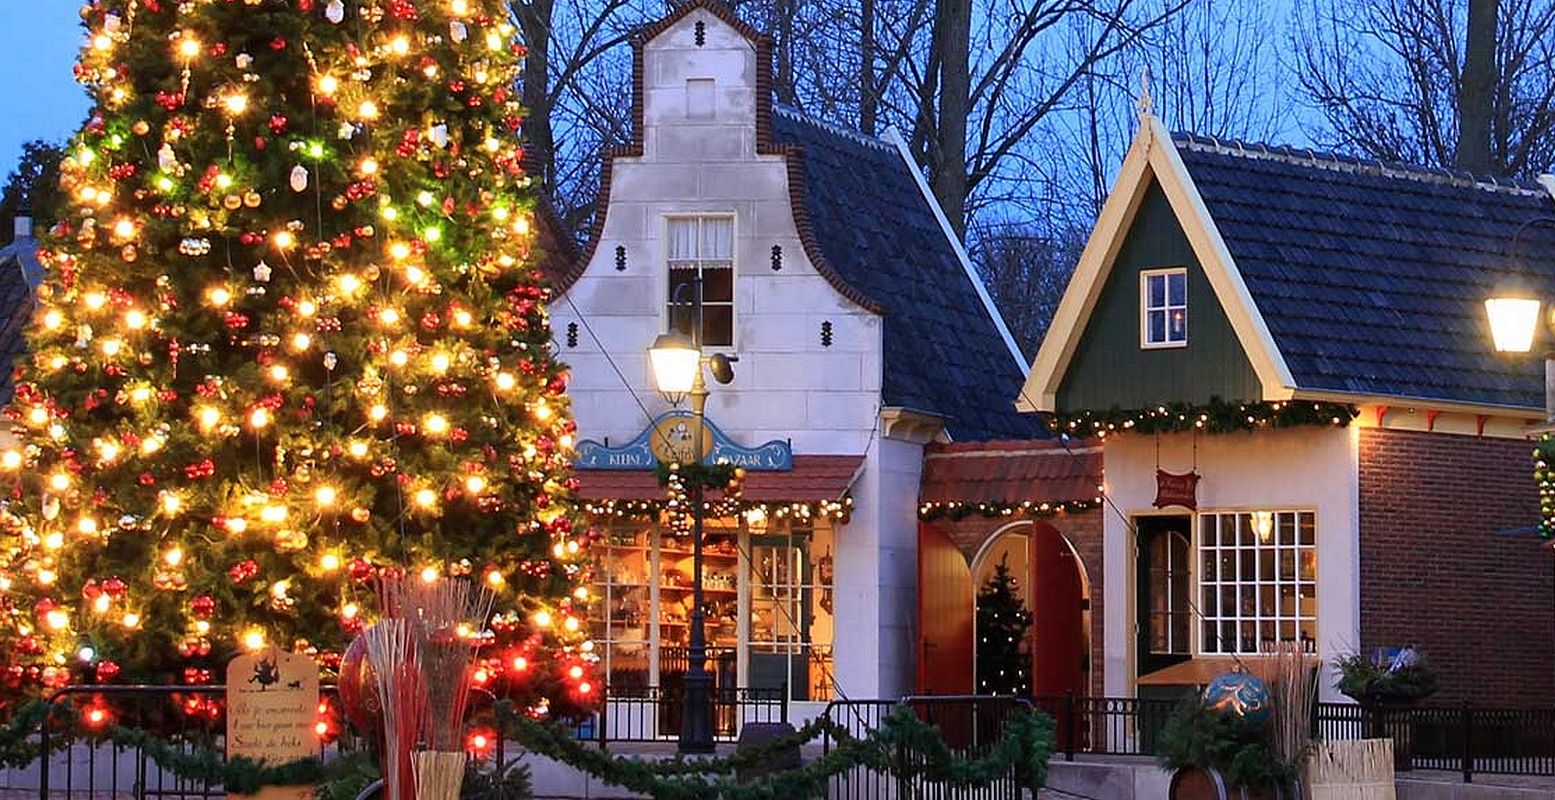 In welk huisje woont de kerstman? Sprookjeswinterland is een sprookje... Foto: Sprookjeswonderland, deel uit de poster voor Sprookjeswinterland